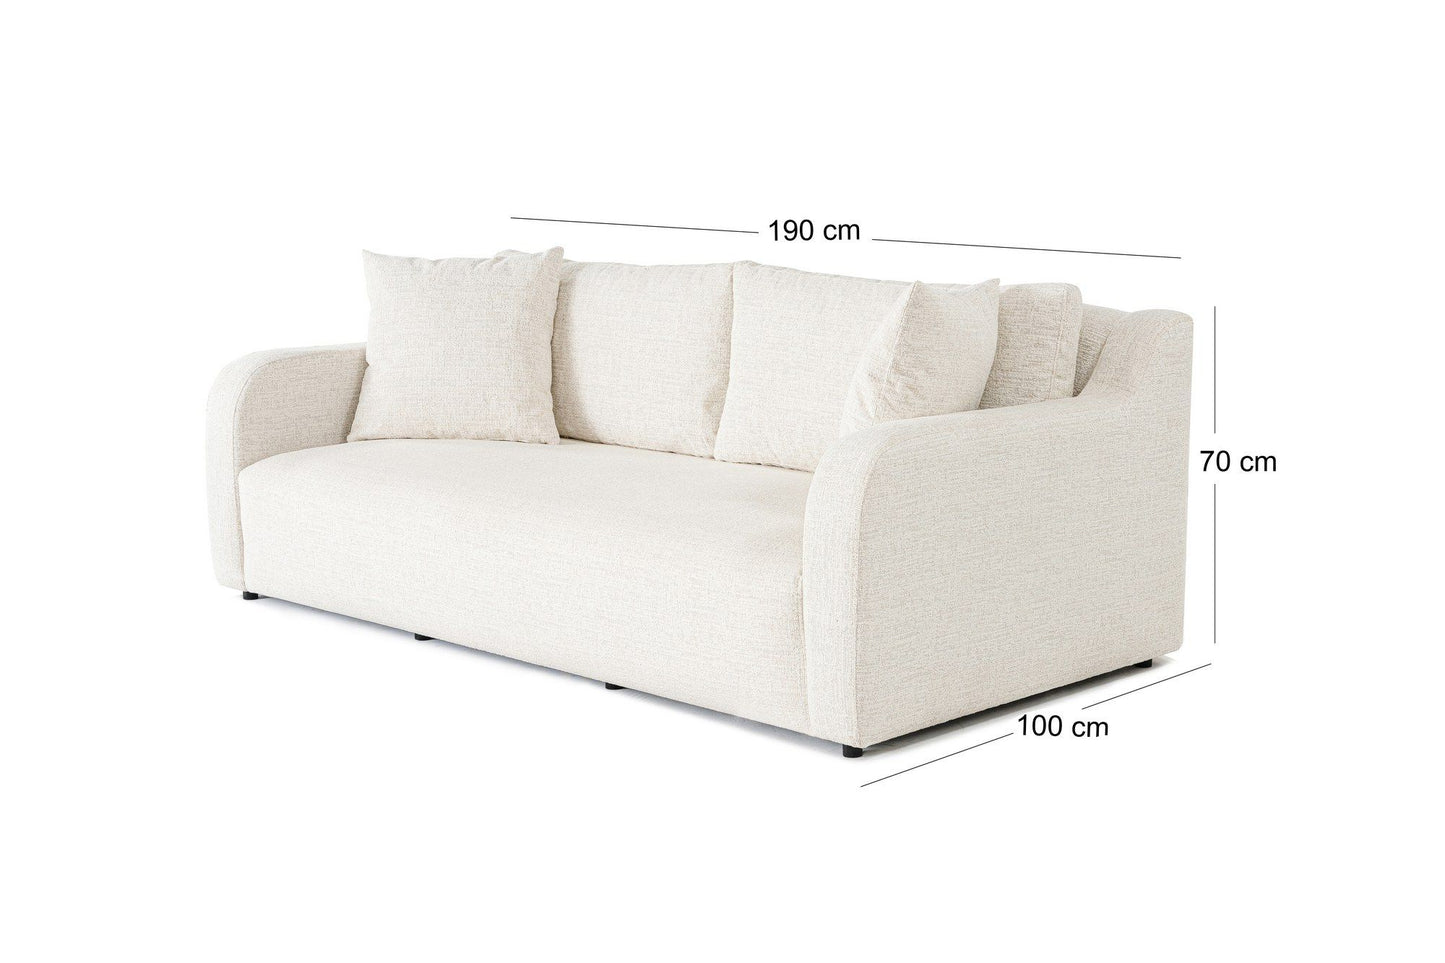 Betty 2 Seater - White - 2-Seat Sofa